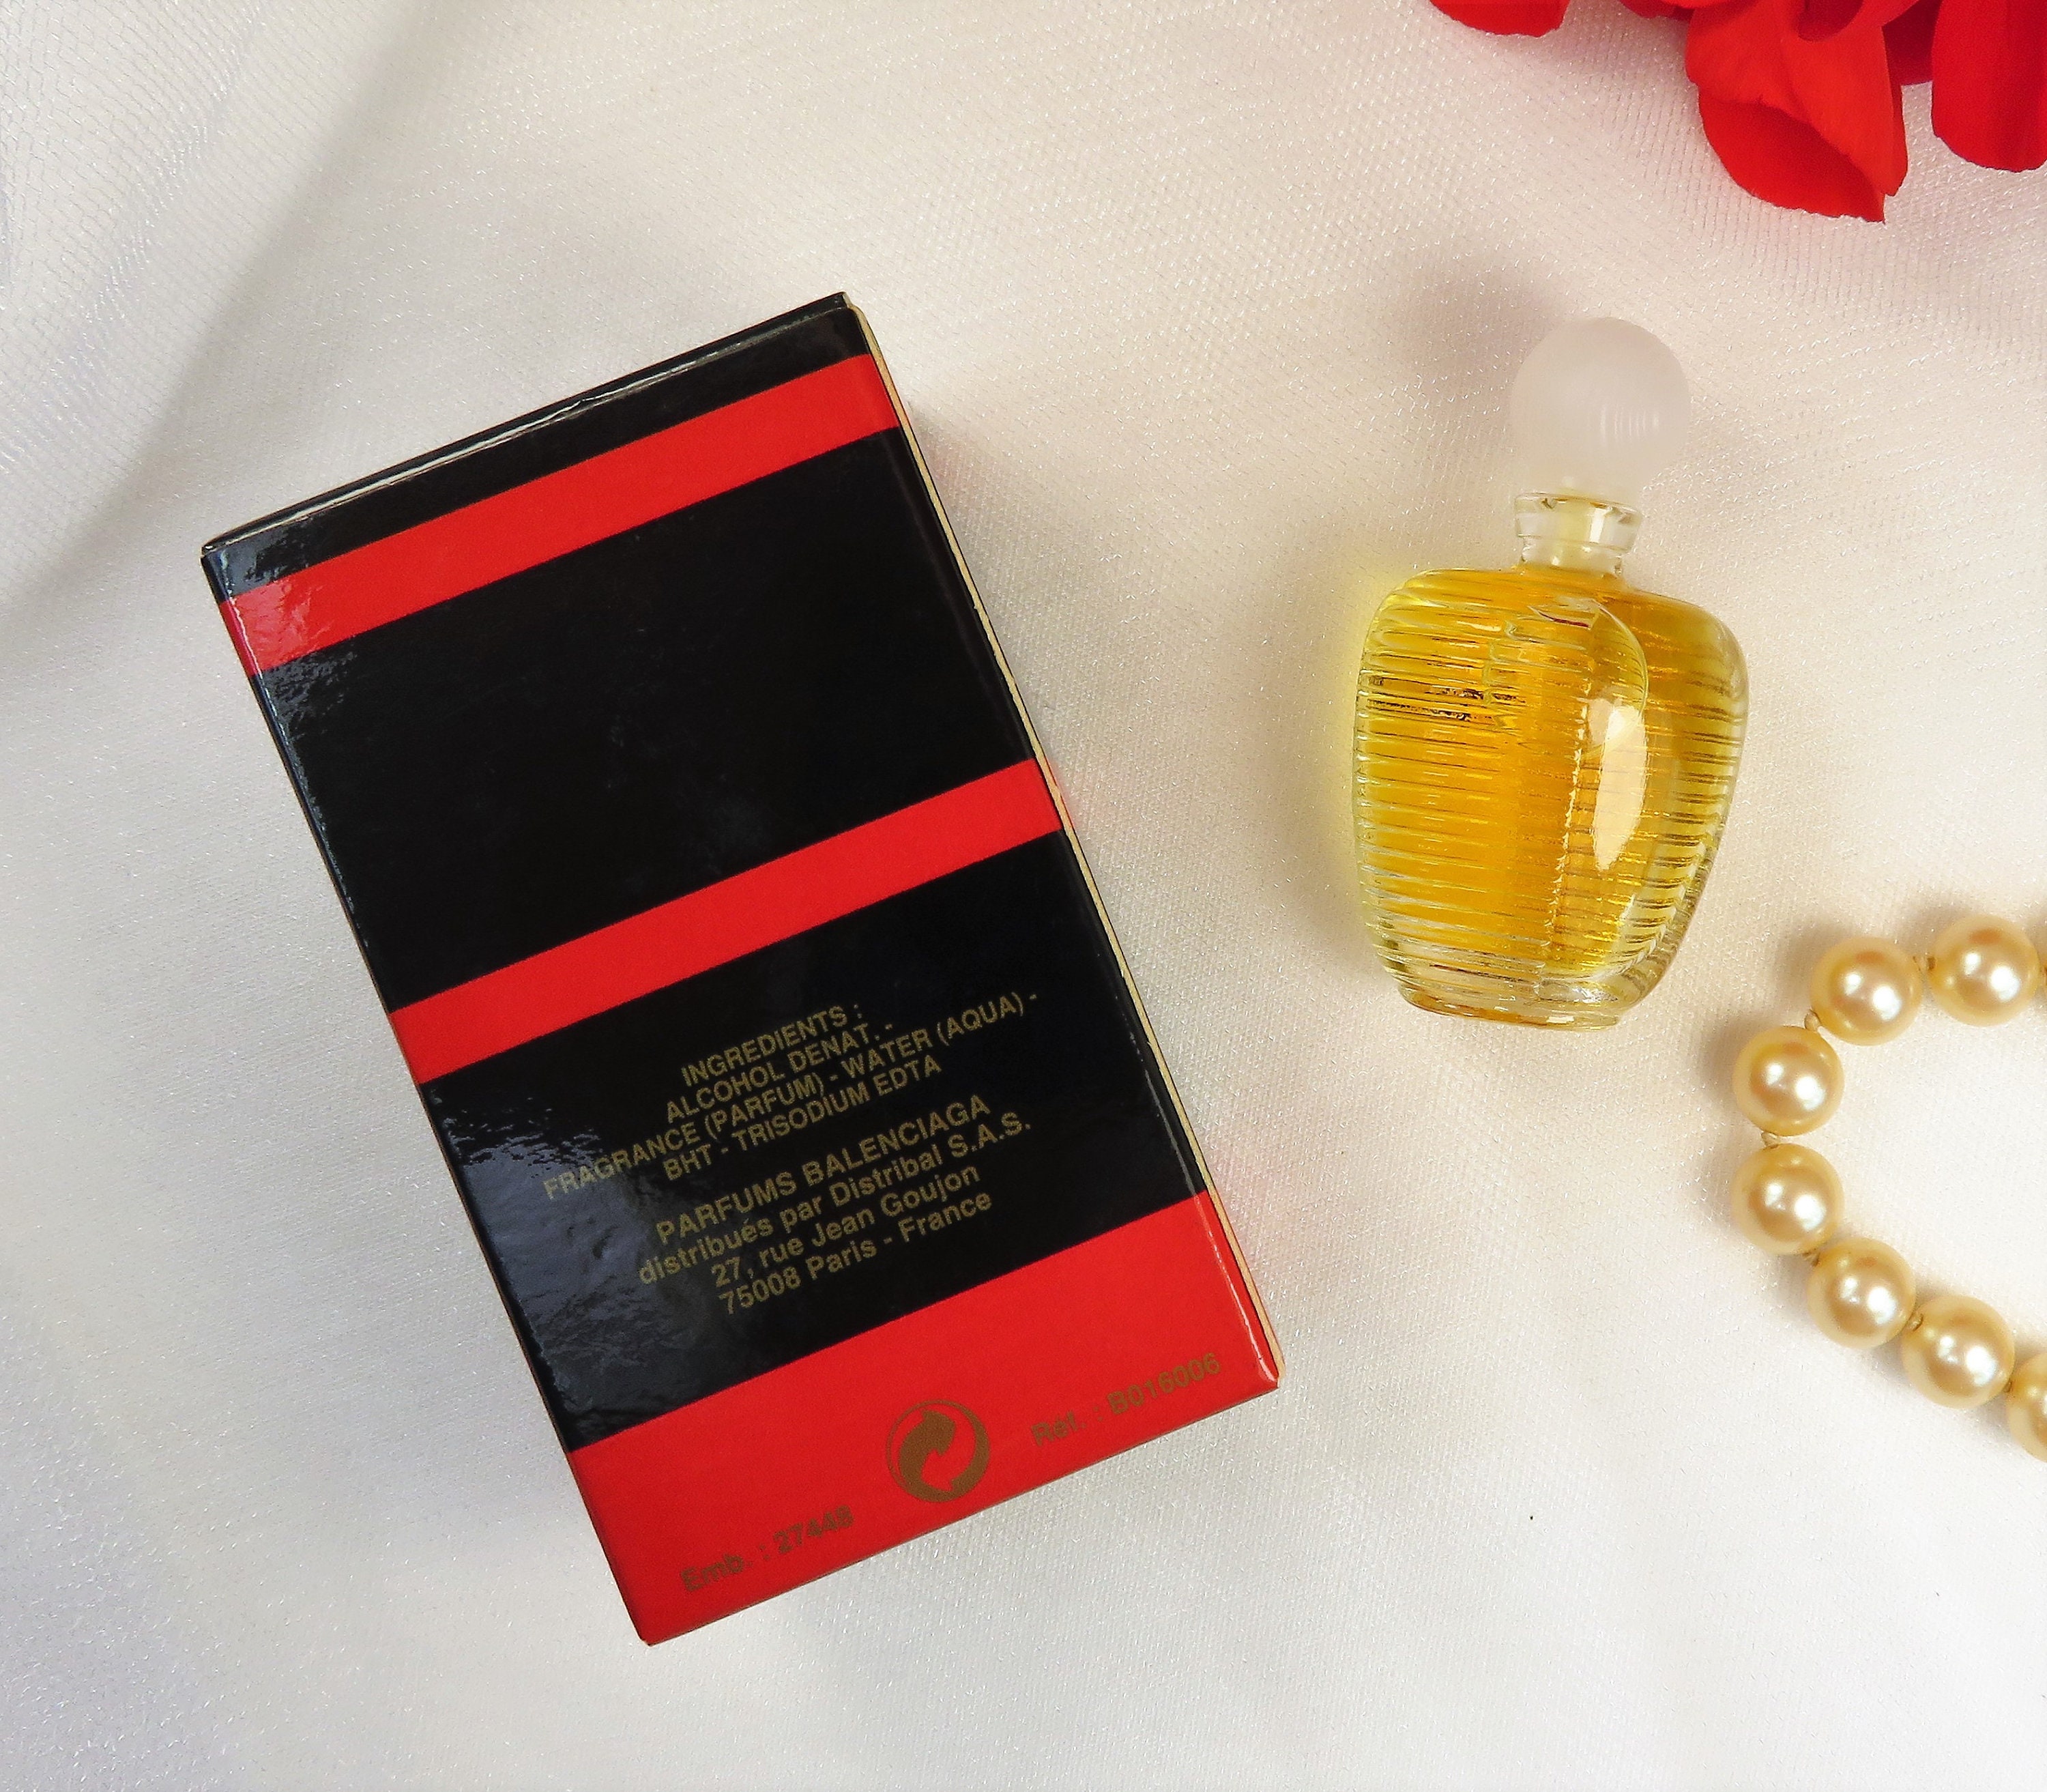 alte Parfum Miniatur Rumba (Eau de Toilette) von Balenciaga 4 ml